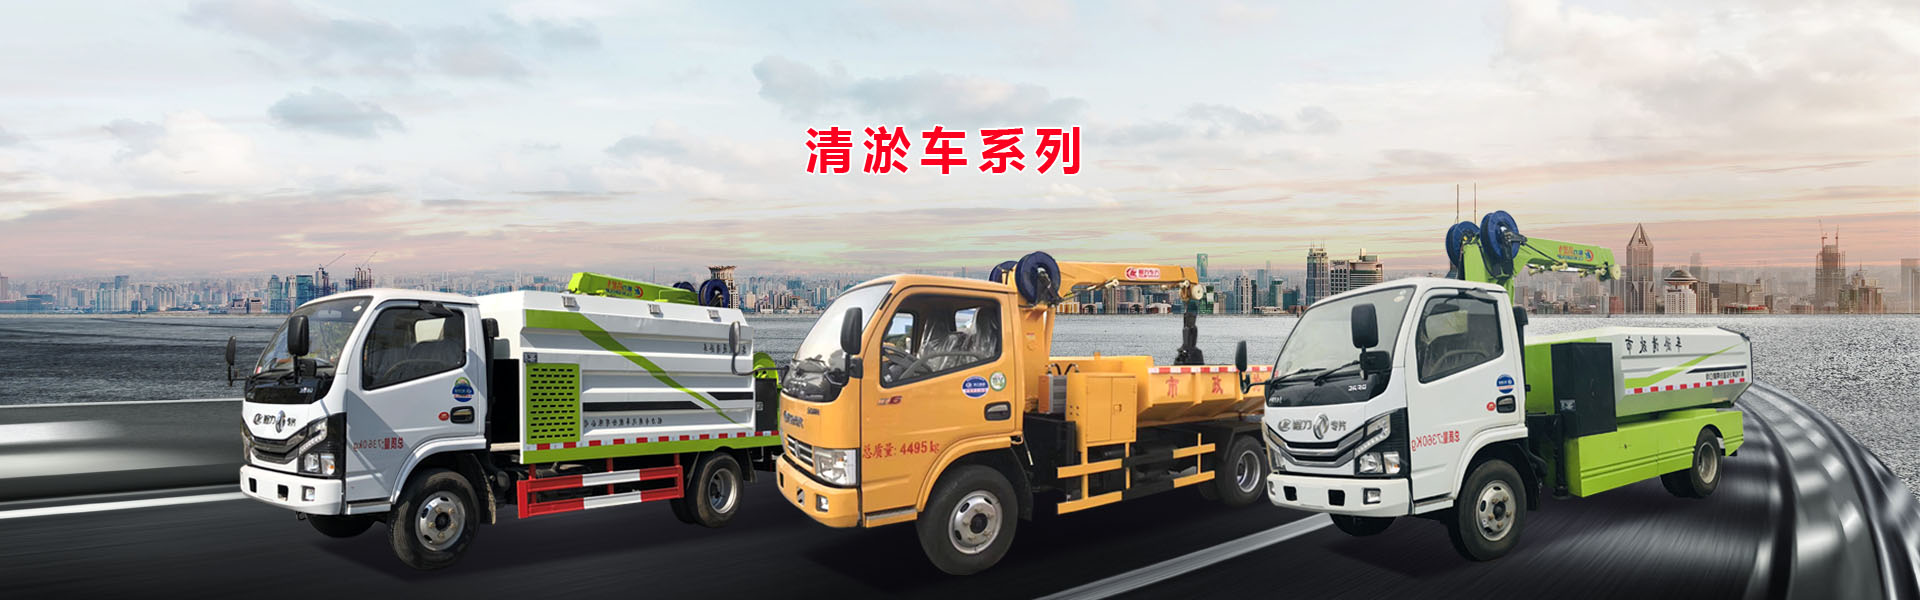 自19年我公司生產的清淤車系列車型為江蘇省環衛部門必備車輛-程力專用汽車股份有限公司